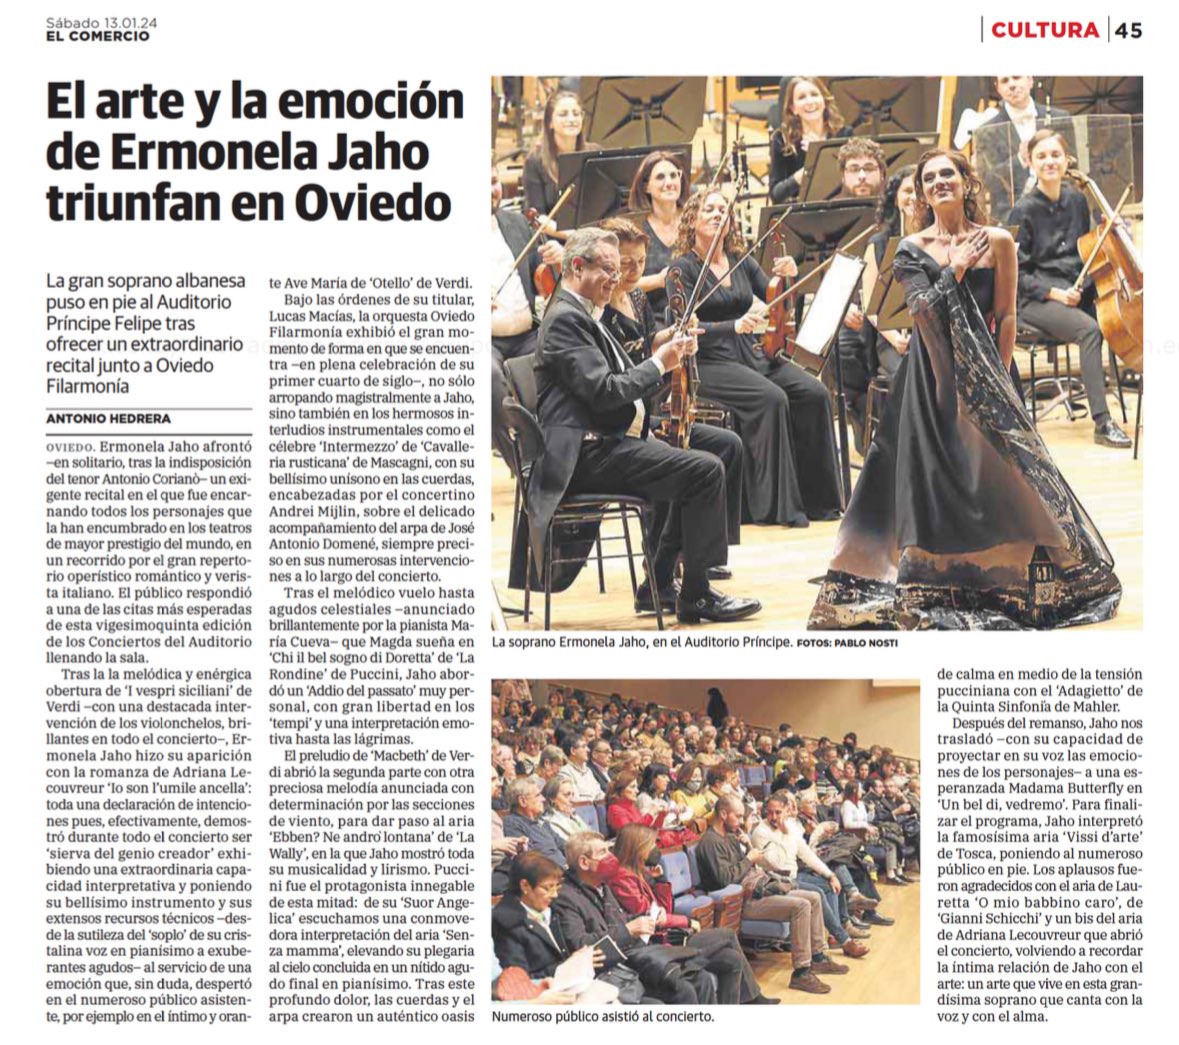 «El arte y la emoción de @ErmonelaJaho triunfan en #Oviedo»
@elcomerciodigit